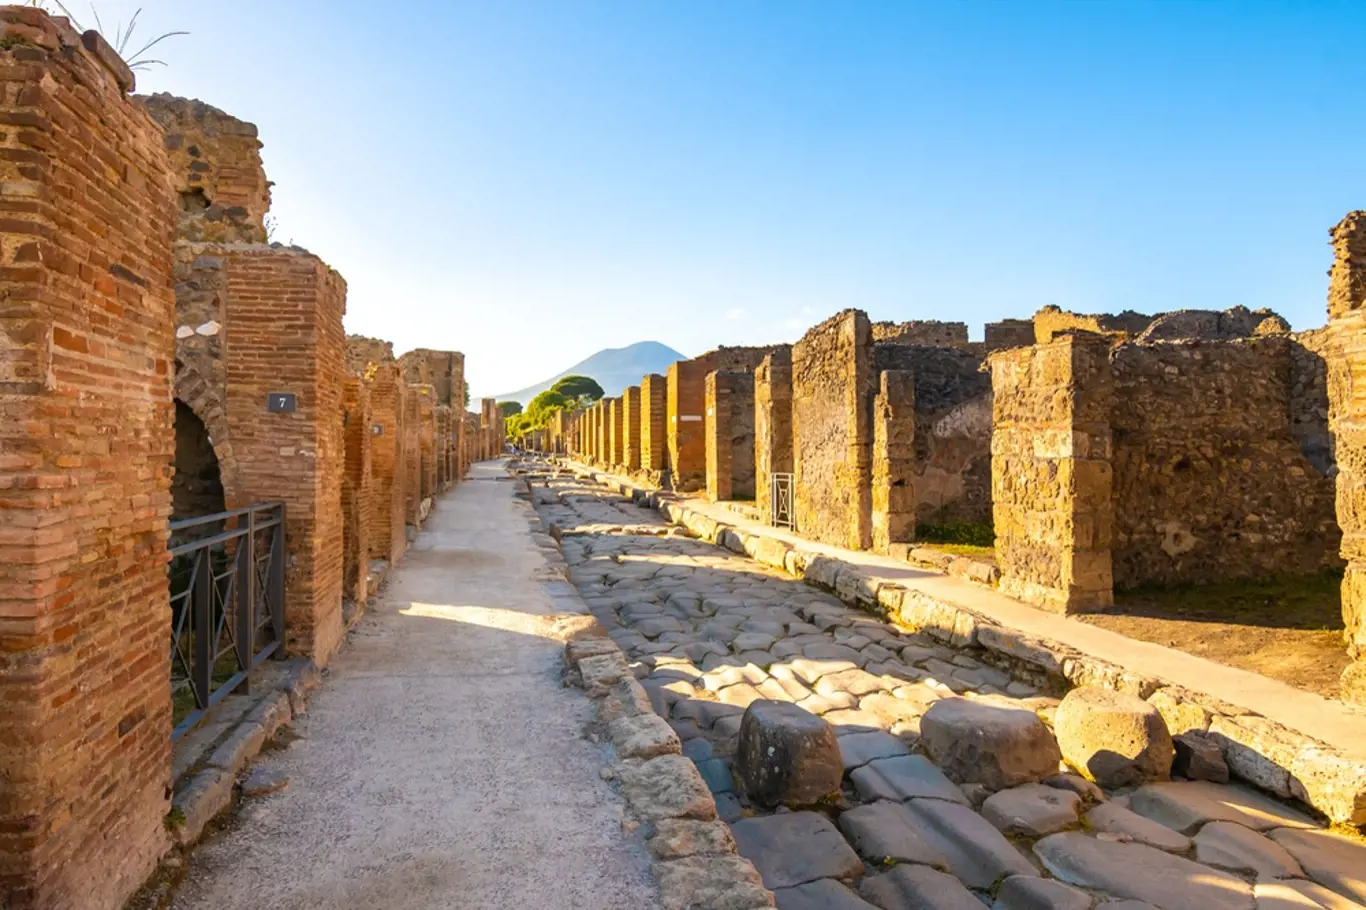 Šestnáct století bylo starořímské město Pompeje považováno za ztracené